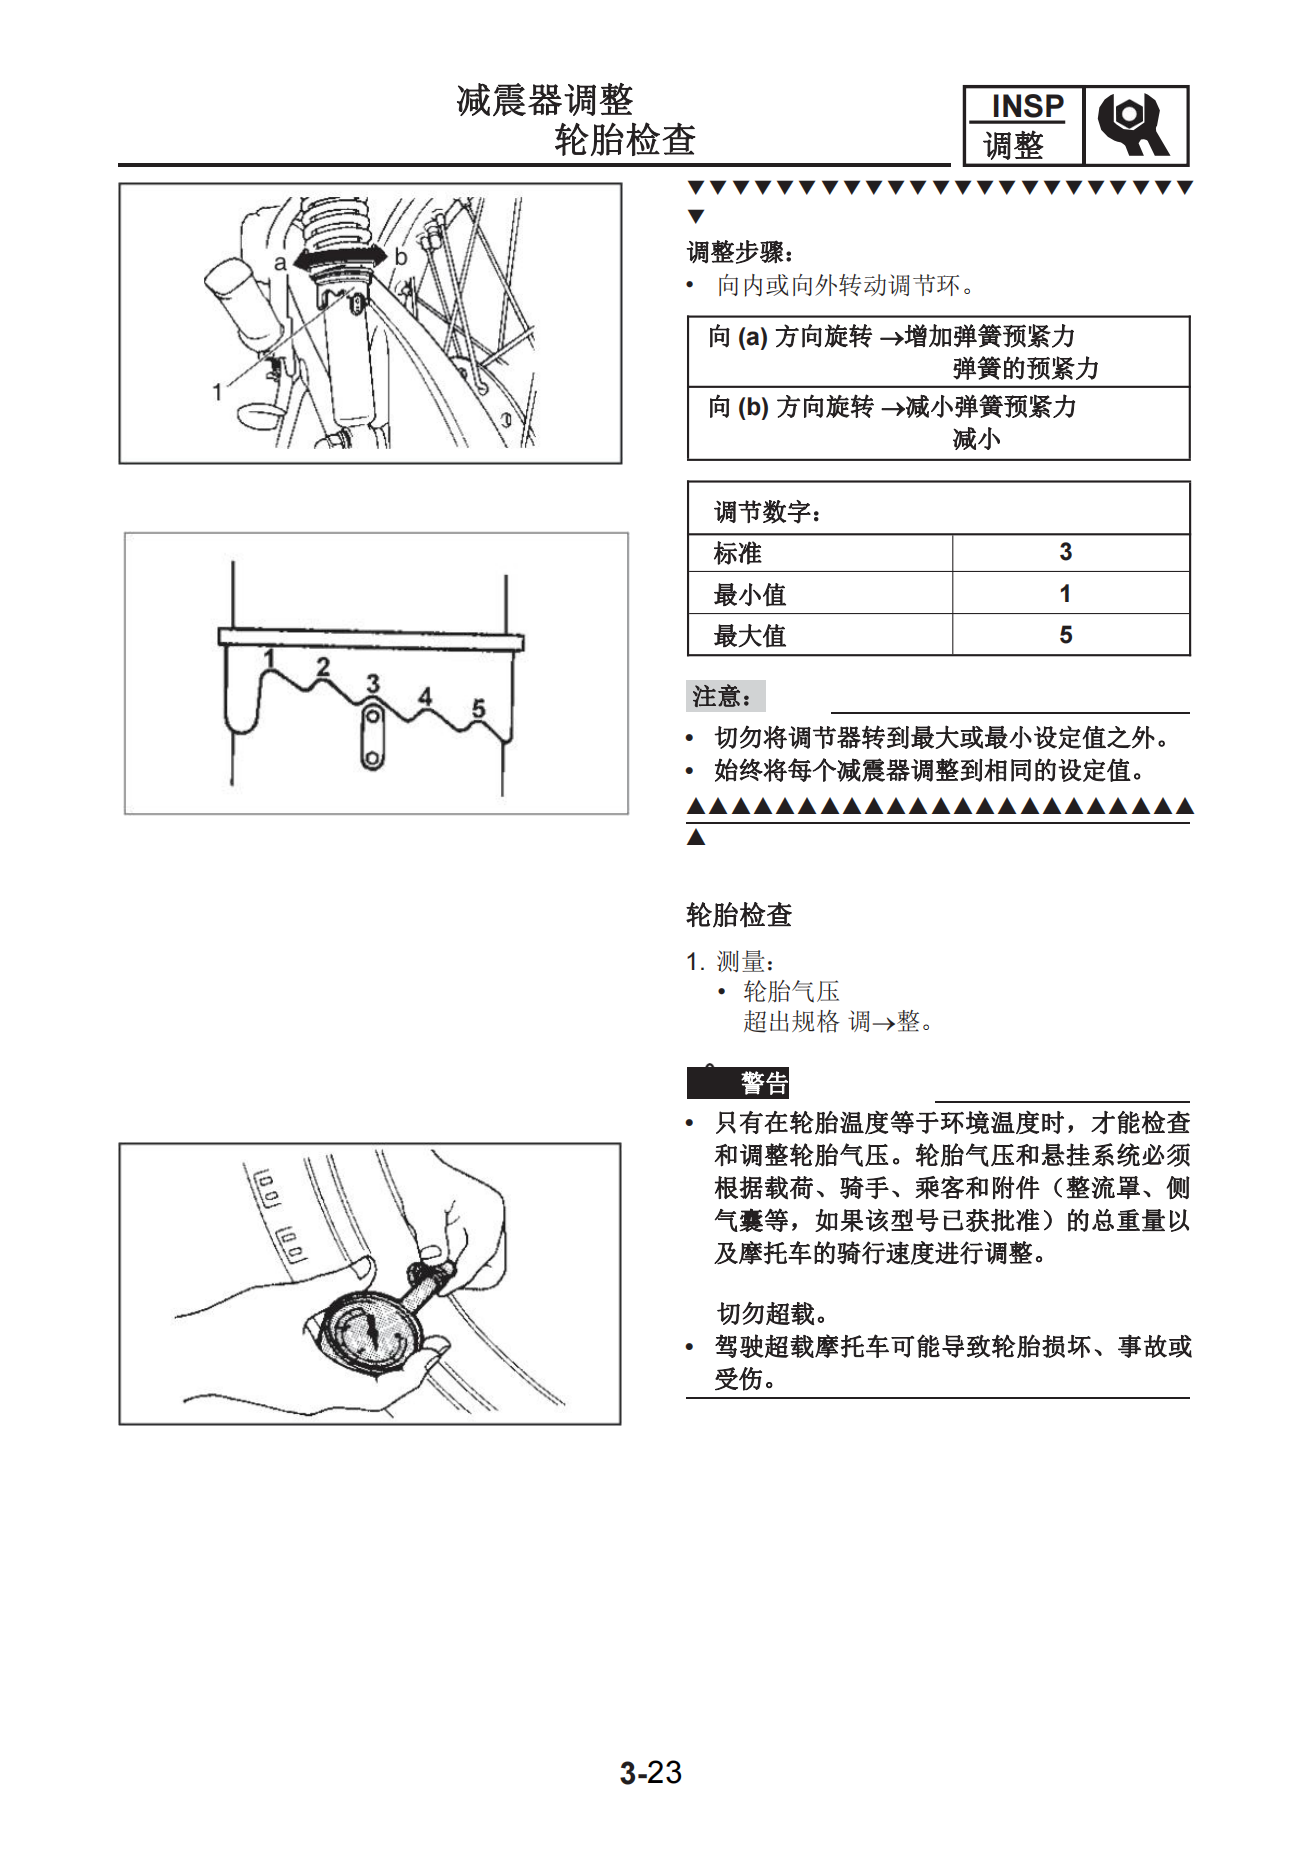 简体中文2009年雅马哈ybr125维修手册插图2